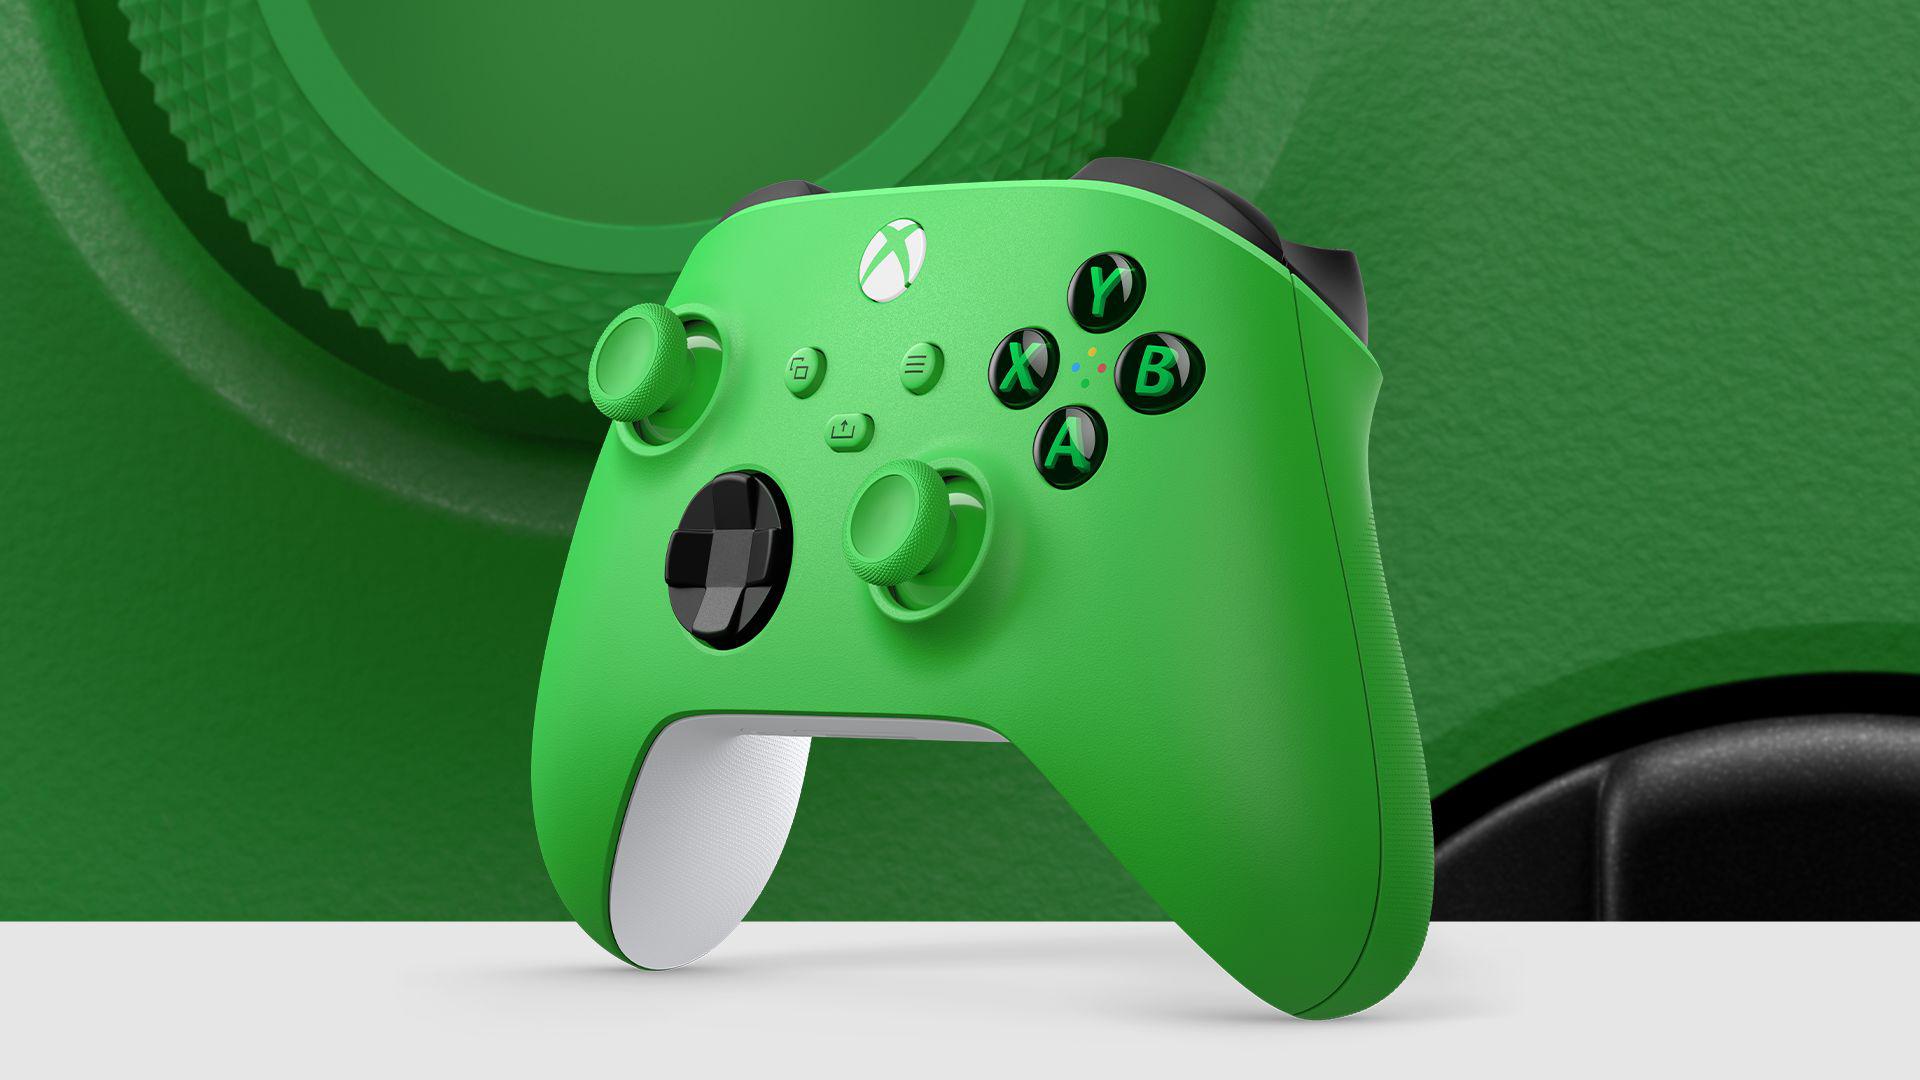 Xboxコントローラーに、これぞ緑な新色追加 | ギズモード・ジャパン